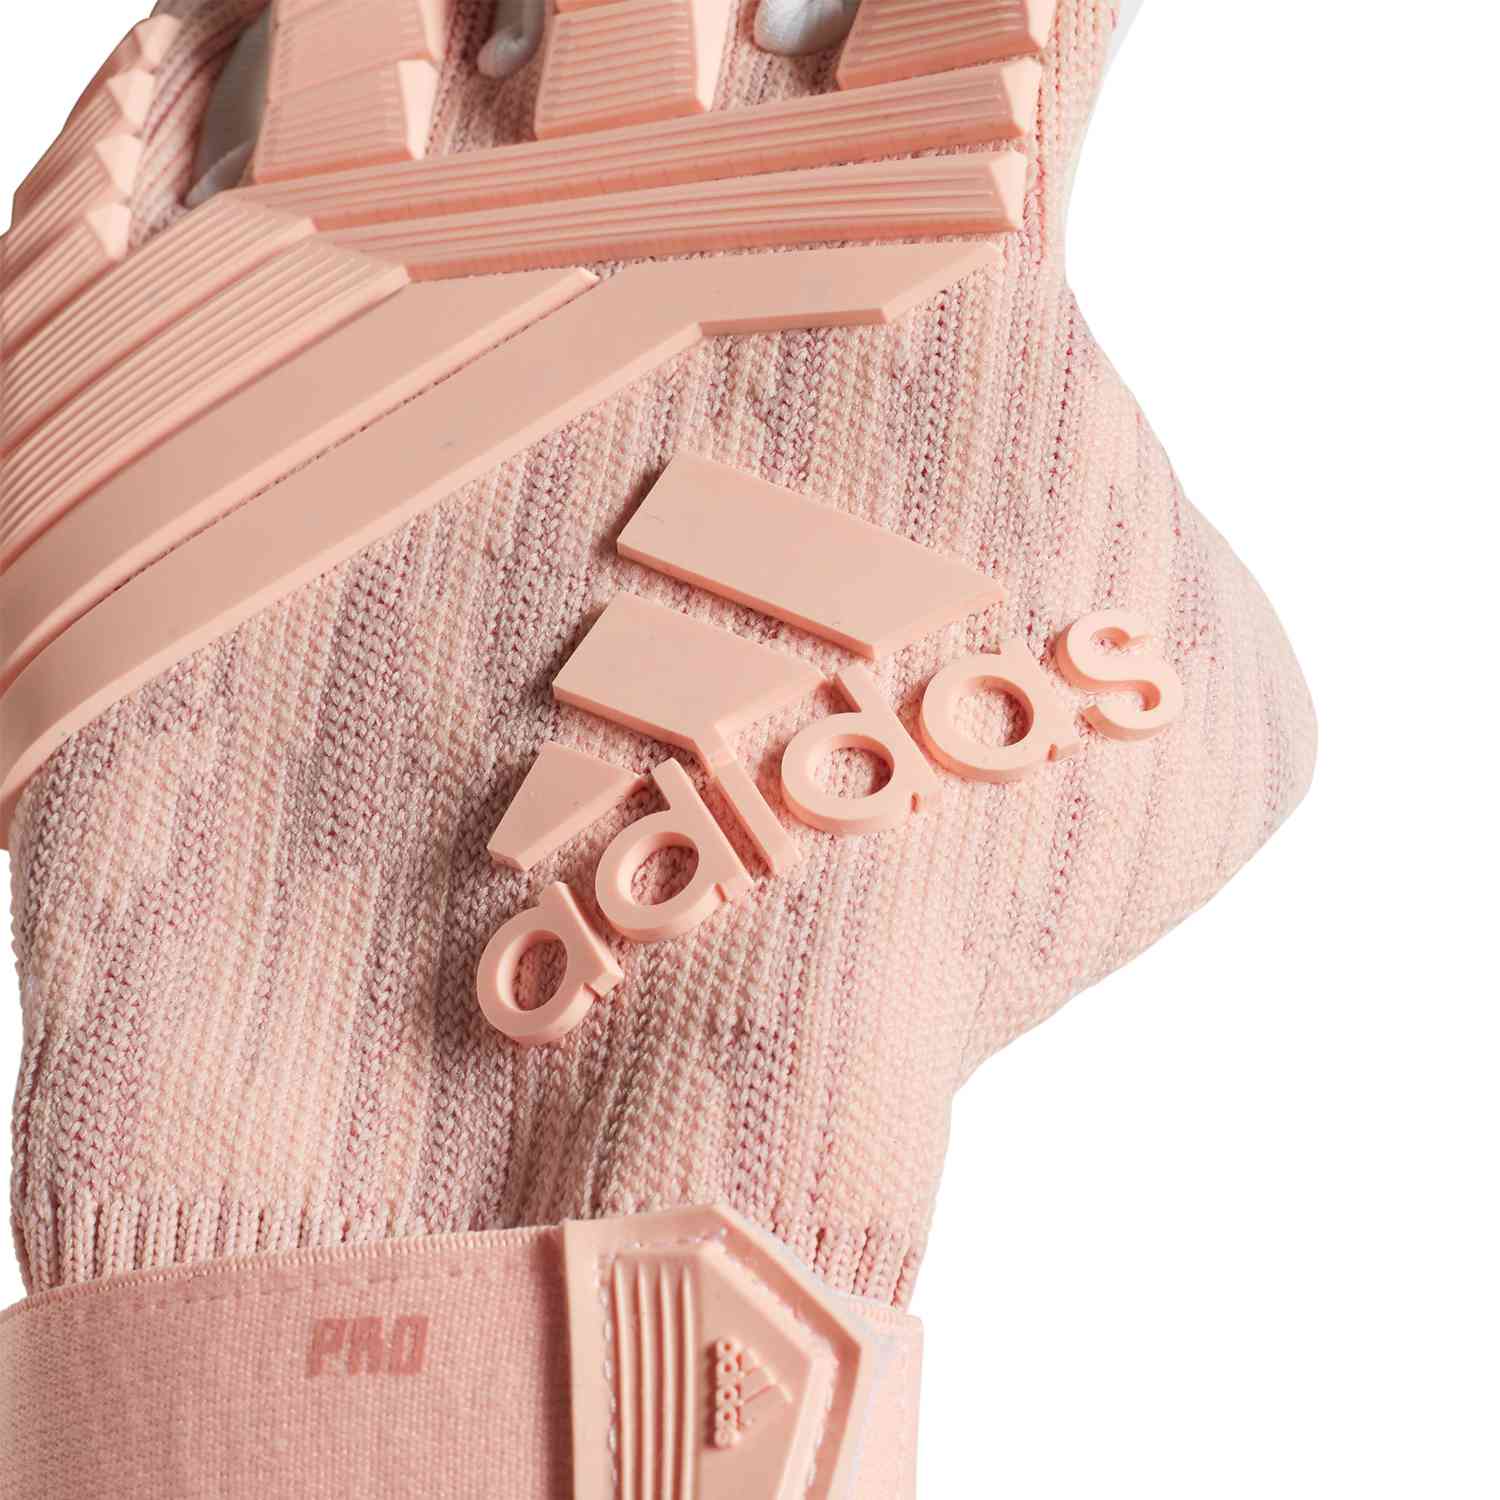 pink predator pro gloves